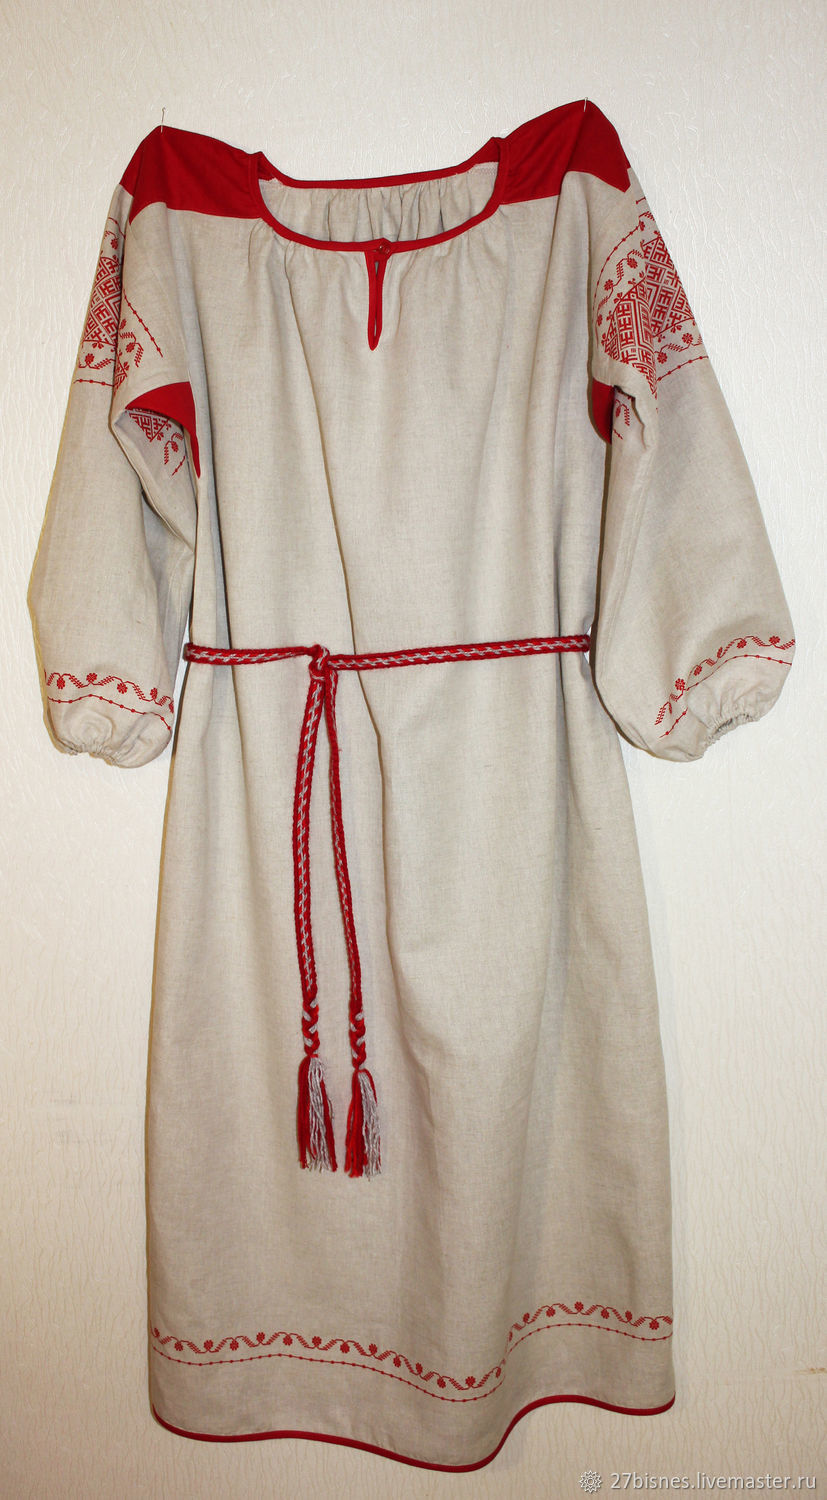 Русский народный костюм рубаха женская